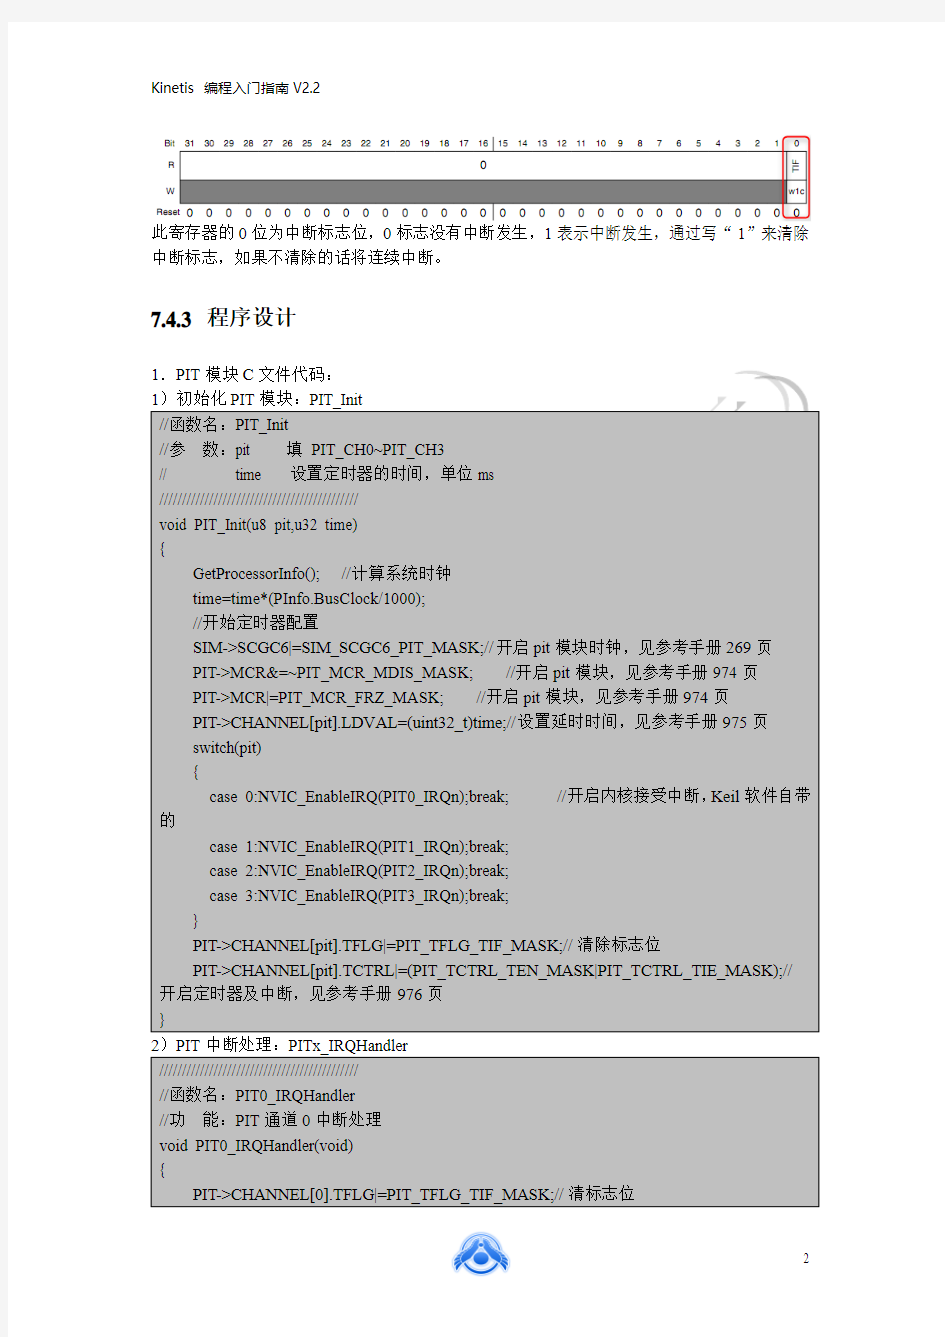 中国石油大学(华东)——Yandld(杨熙)——Kinetis编程入门指南V2.2(经典资料)下